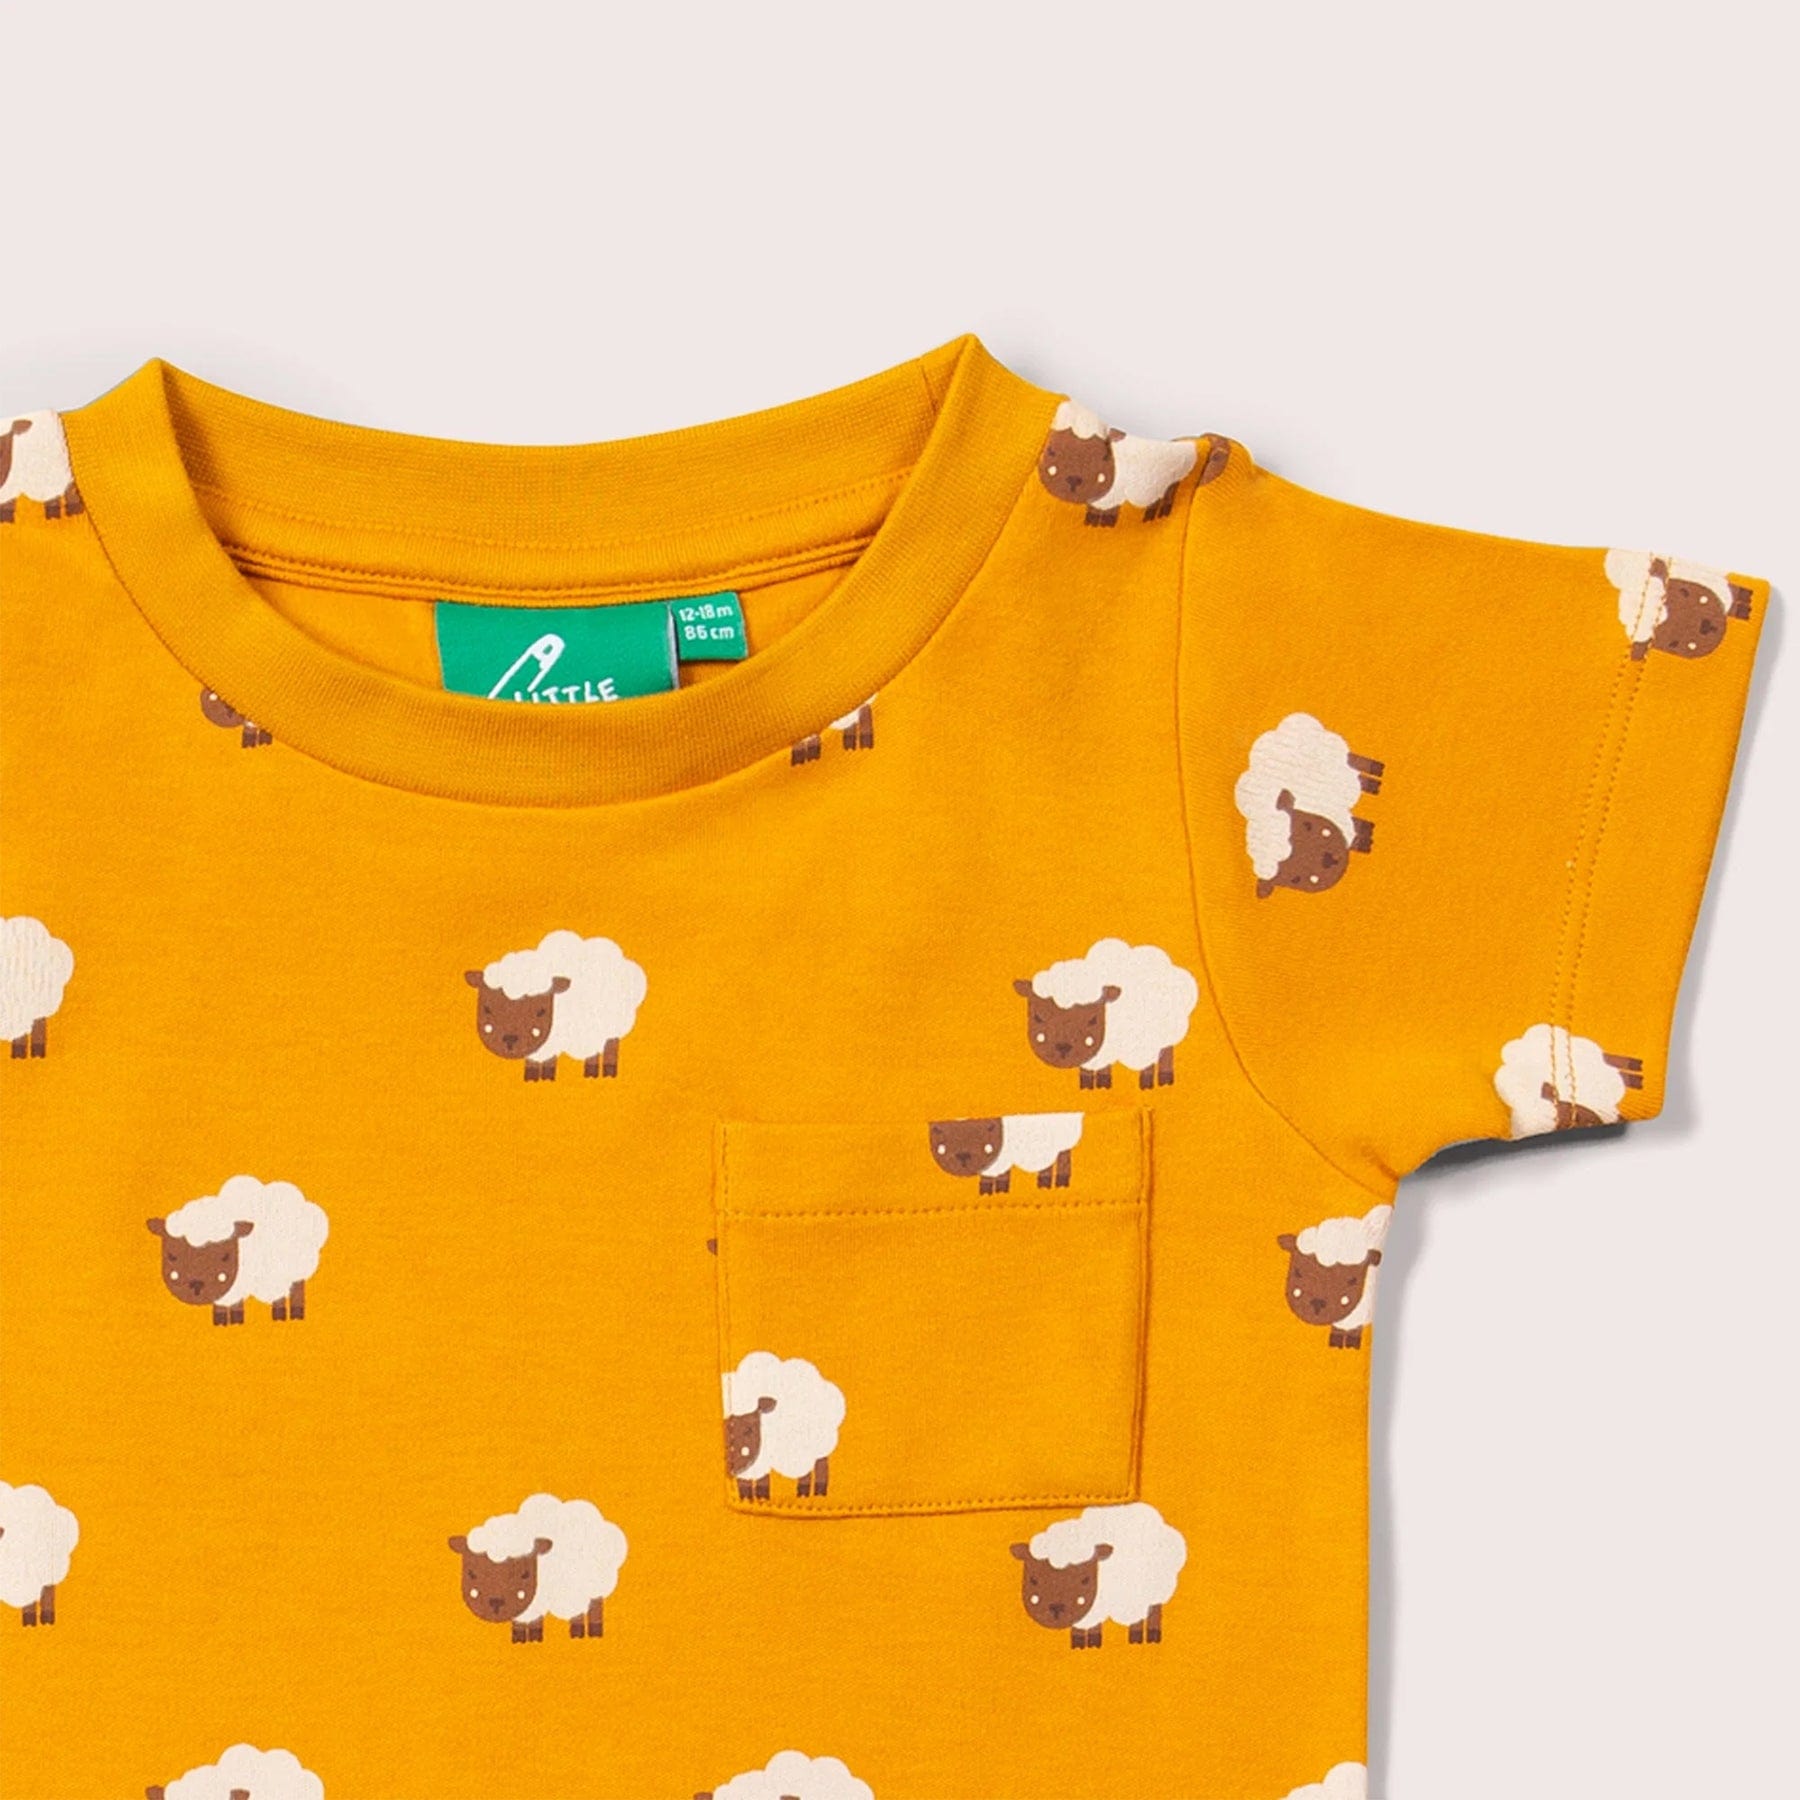 Counting sheep t-shirt & jogger playset